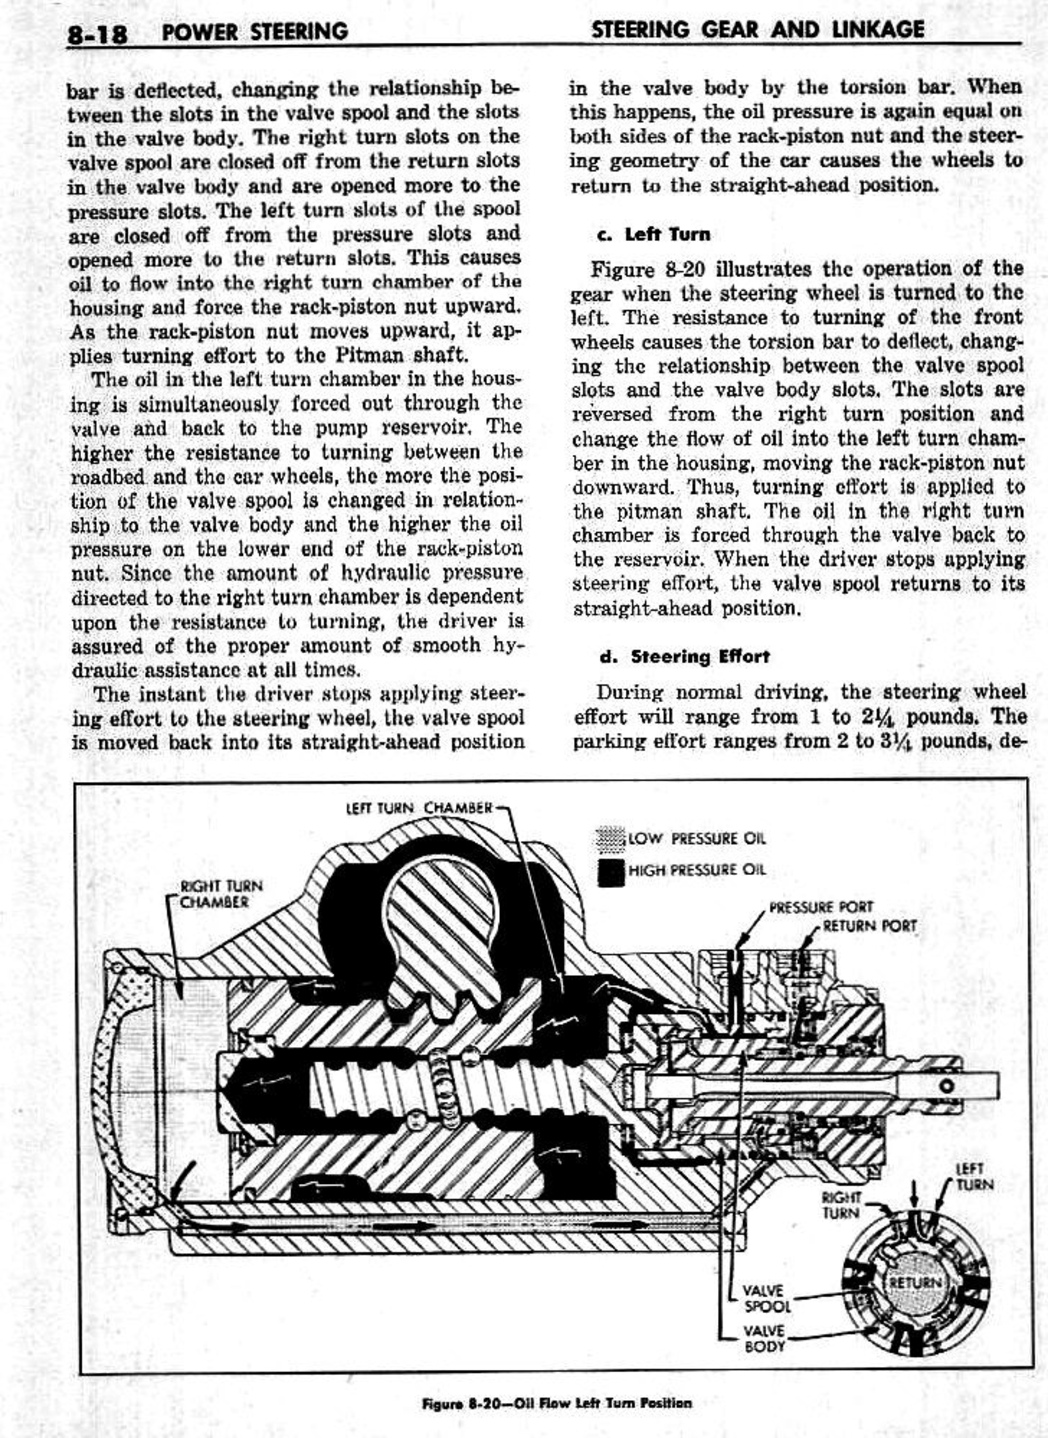 n_09 1959 Buick Shop Manual - Steering-018-018.jpg